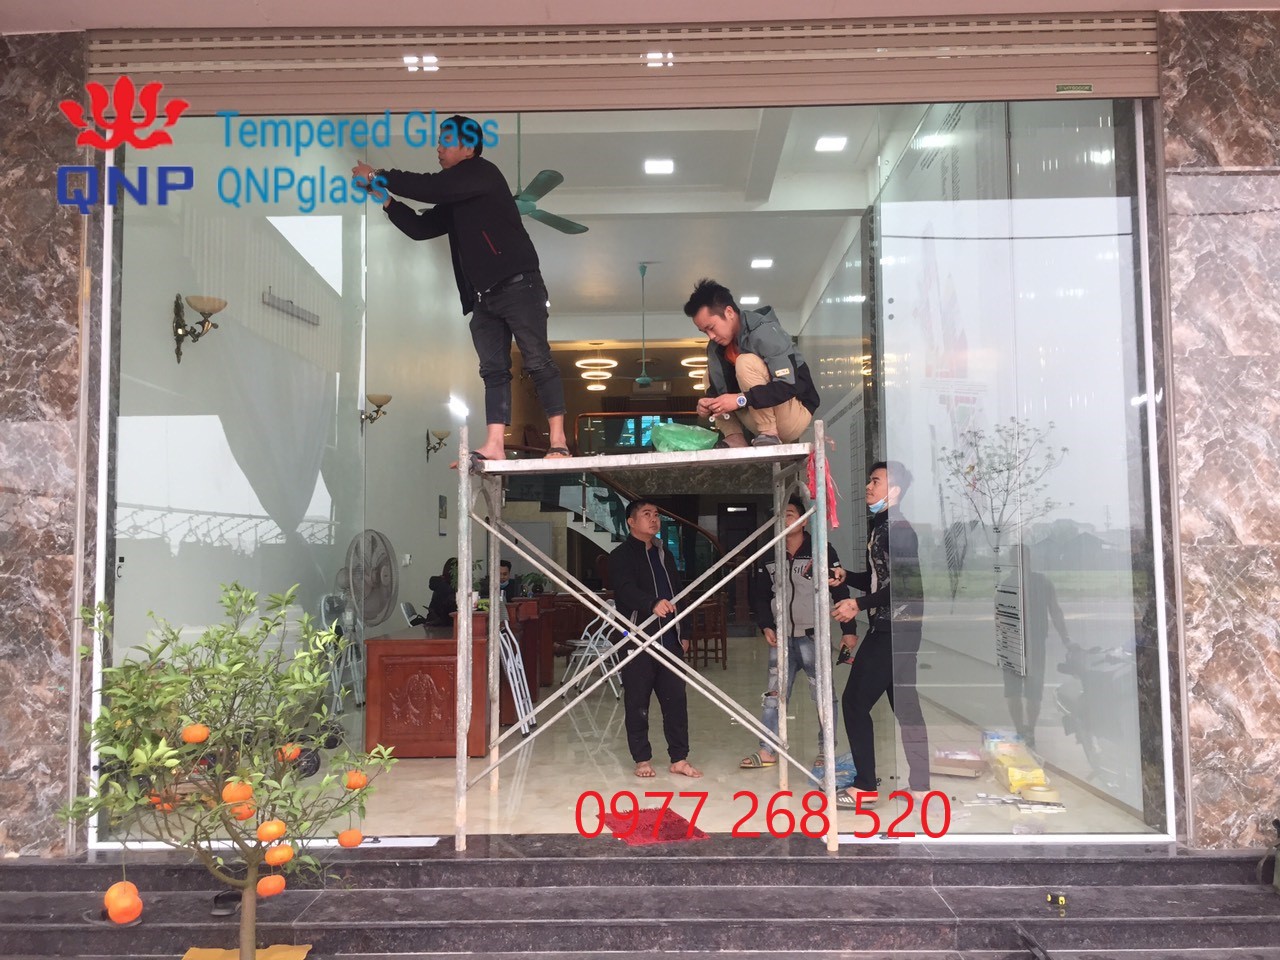 Thay bản lề cửa kính chính hãng tại huyện Quế Võ, Sửa chữa cửa kính giá rẻ tại huyện Quế Võ, Sửa chữa cửa kính 24h tại huyện Quế Võ, Báo giá thay bản lề cửa kính tại huyện Quế Võ